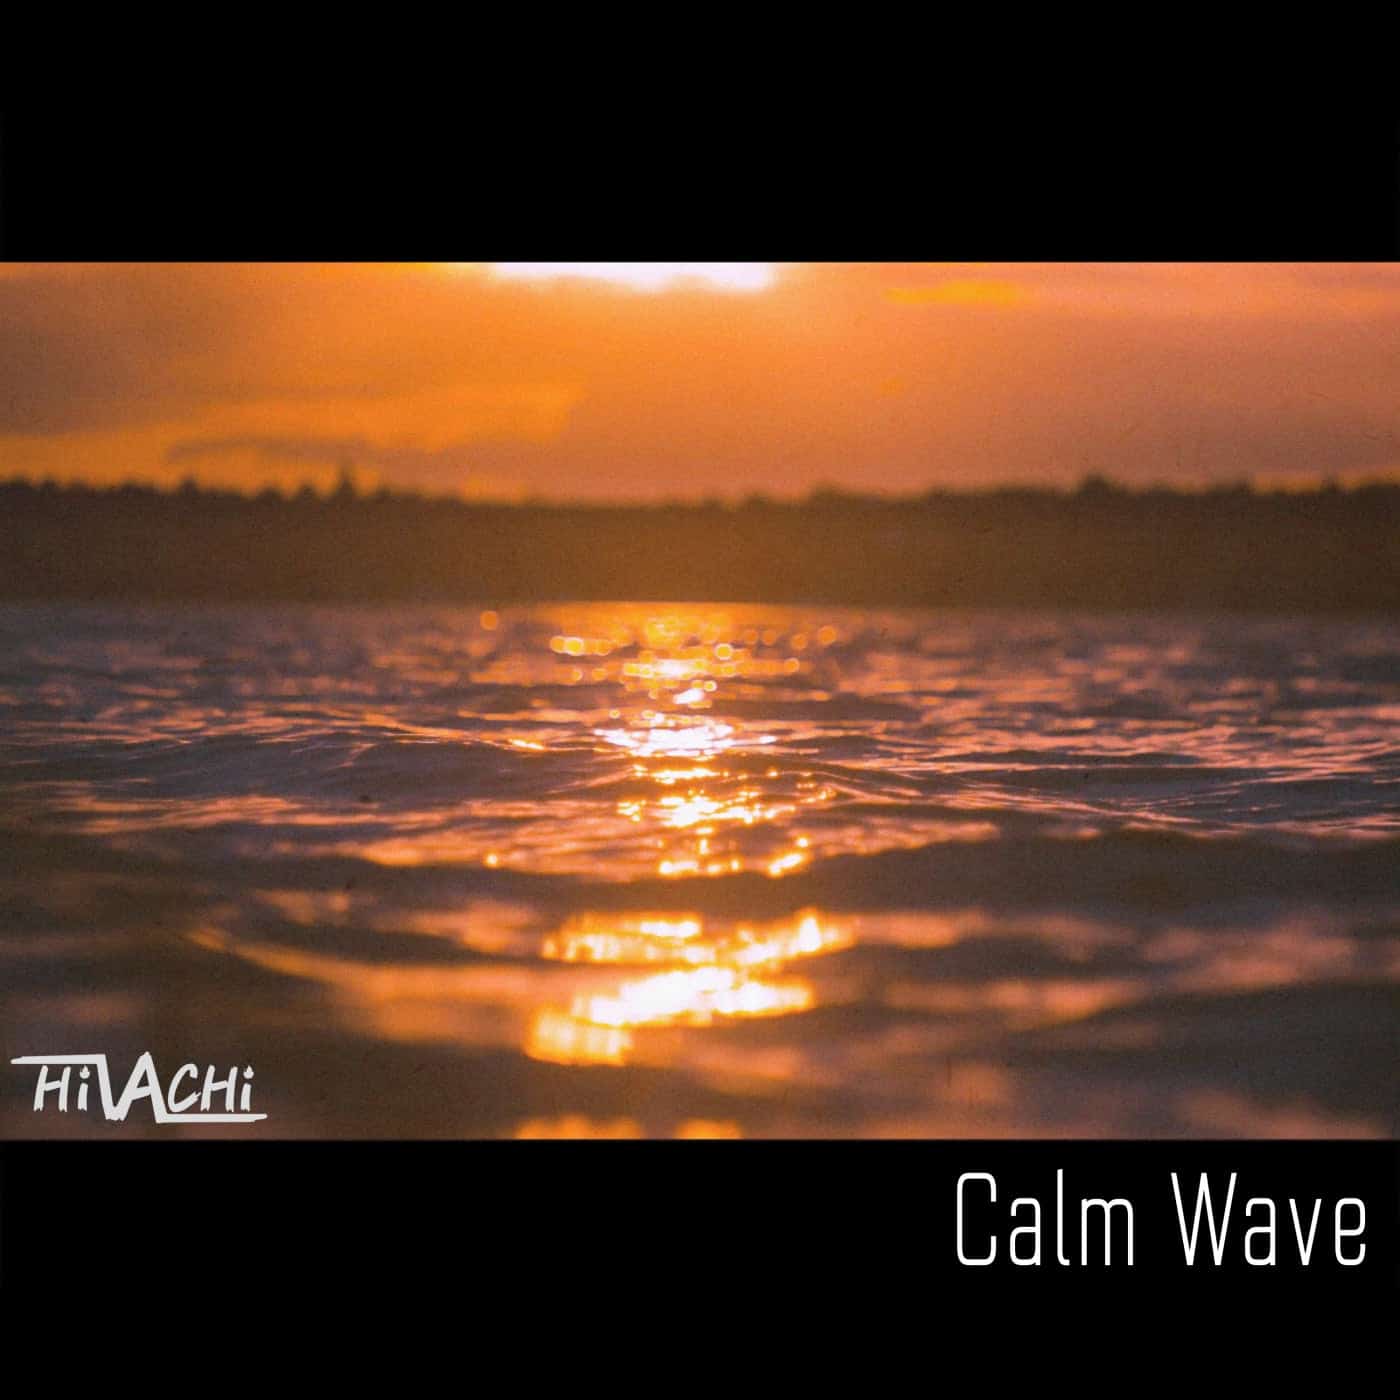 HiVACHi released “Calm Wave”